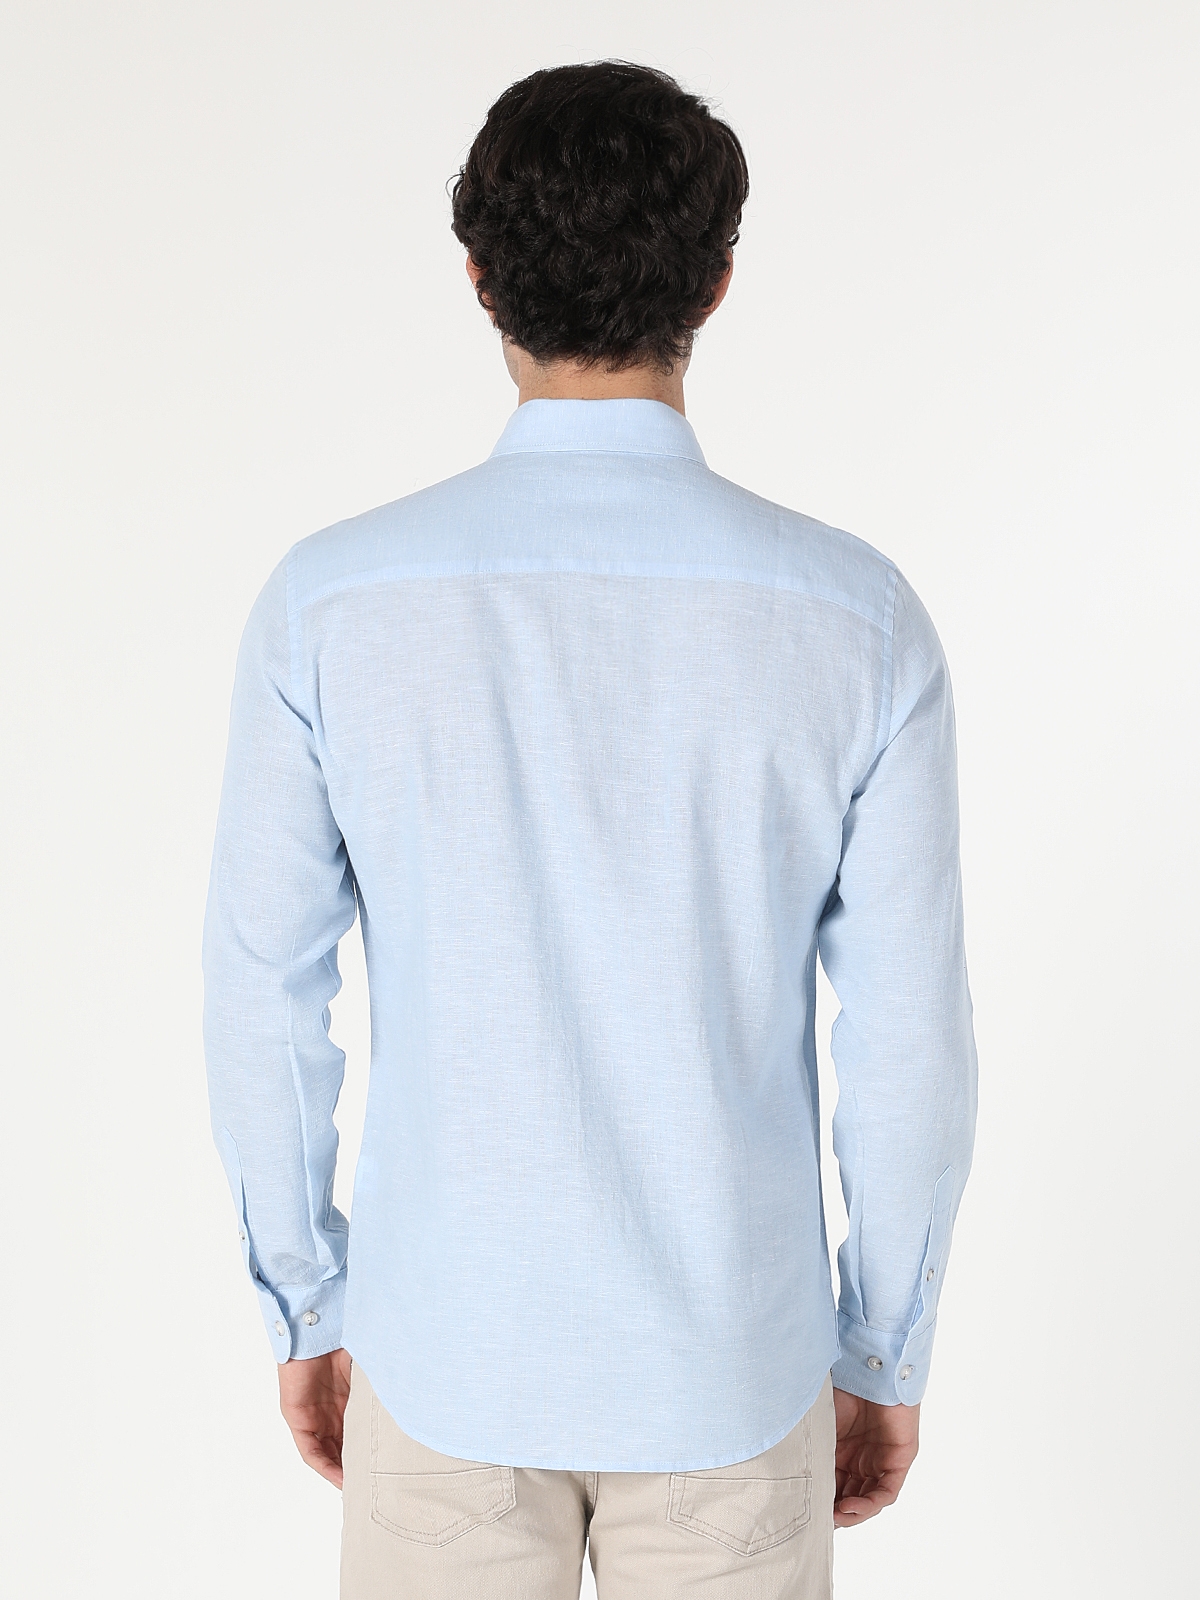 Afficher les détails de Chemise À Manches Longues Bleue Coupe Slim Pour Homme